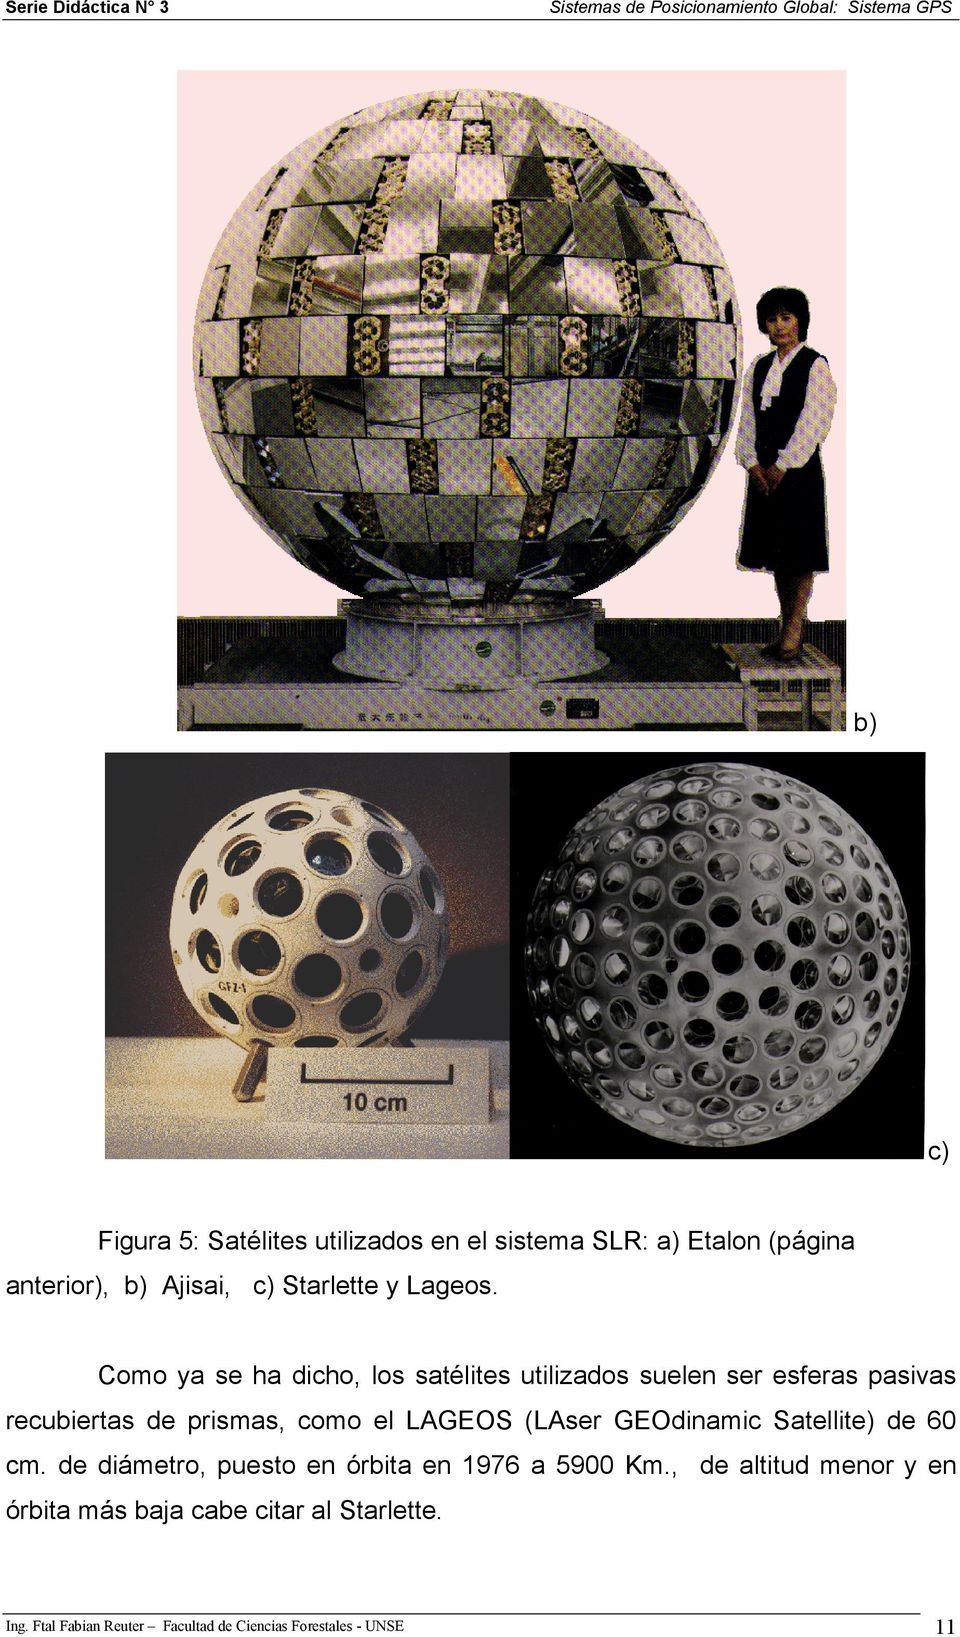 Como ya se ha dicho, los satélites utilizados suelen ser esferas pasivas recubiertas de prismas, como el LAGEOS